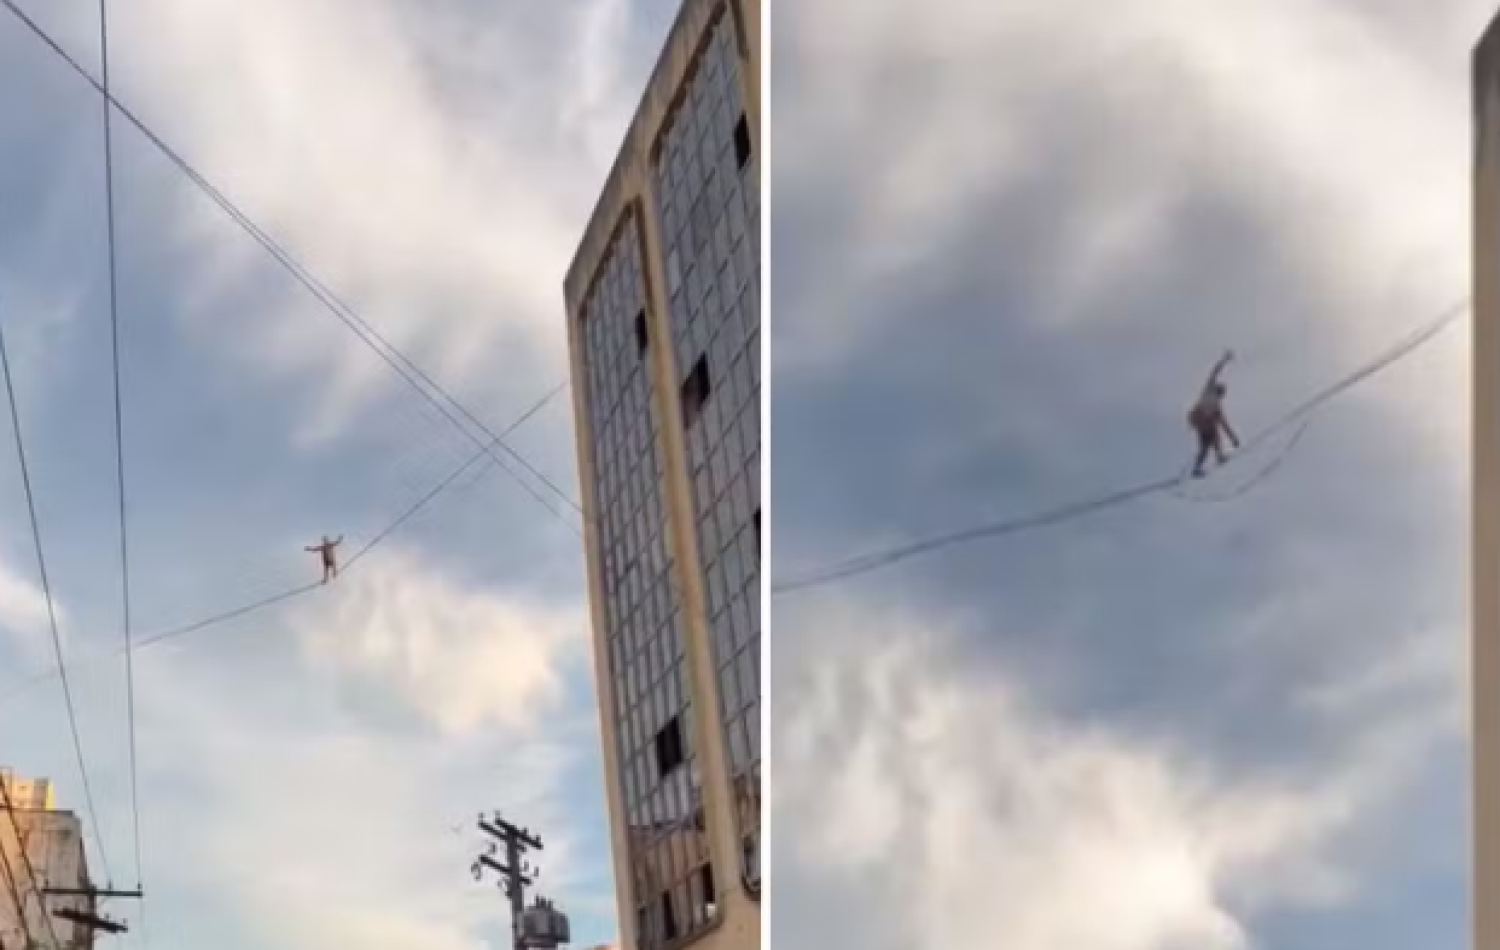 Equilibrista se arrisca ao andar em corda entre prédios em Goiânia